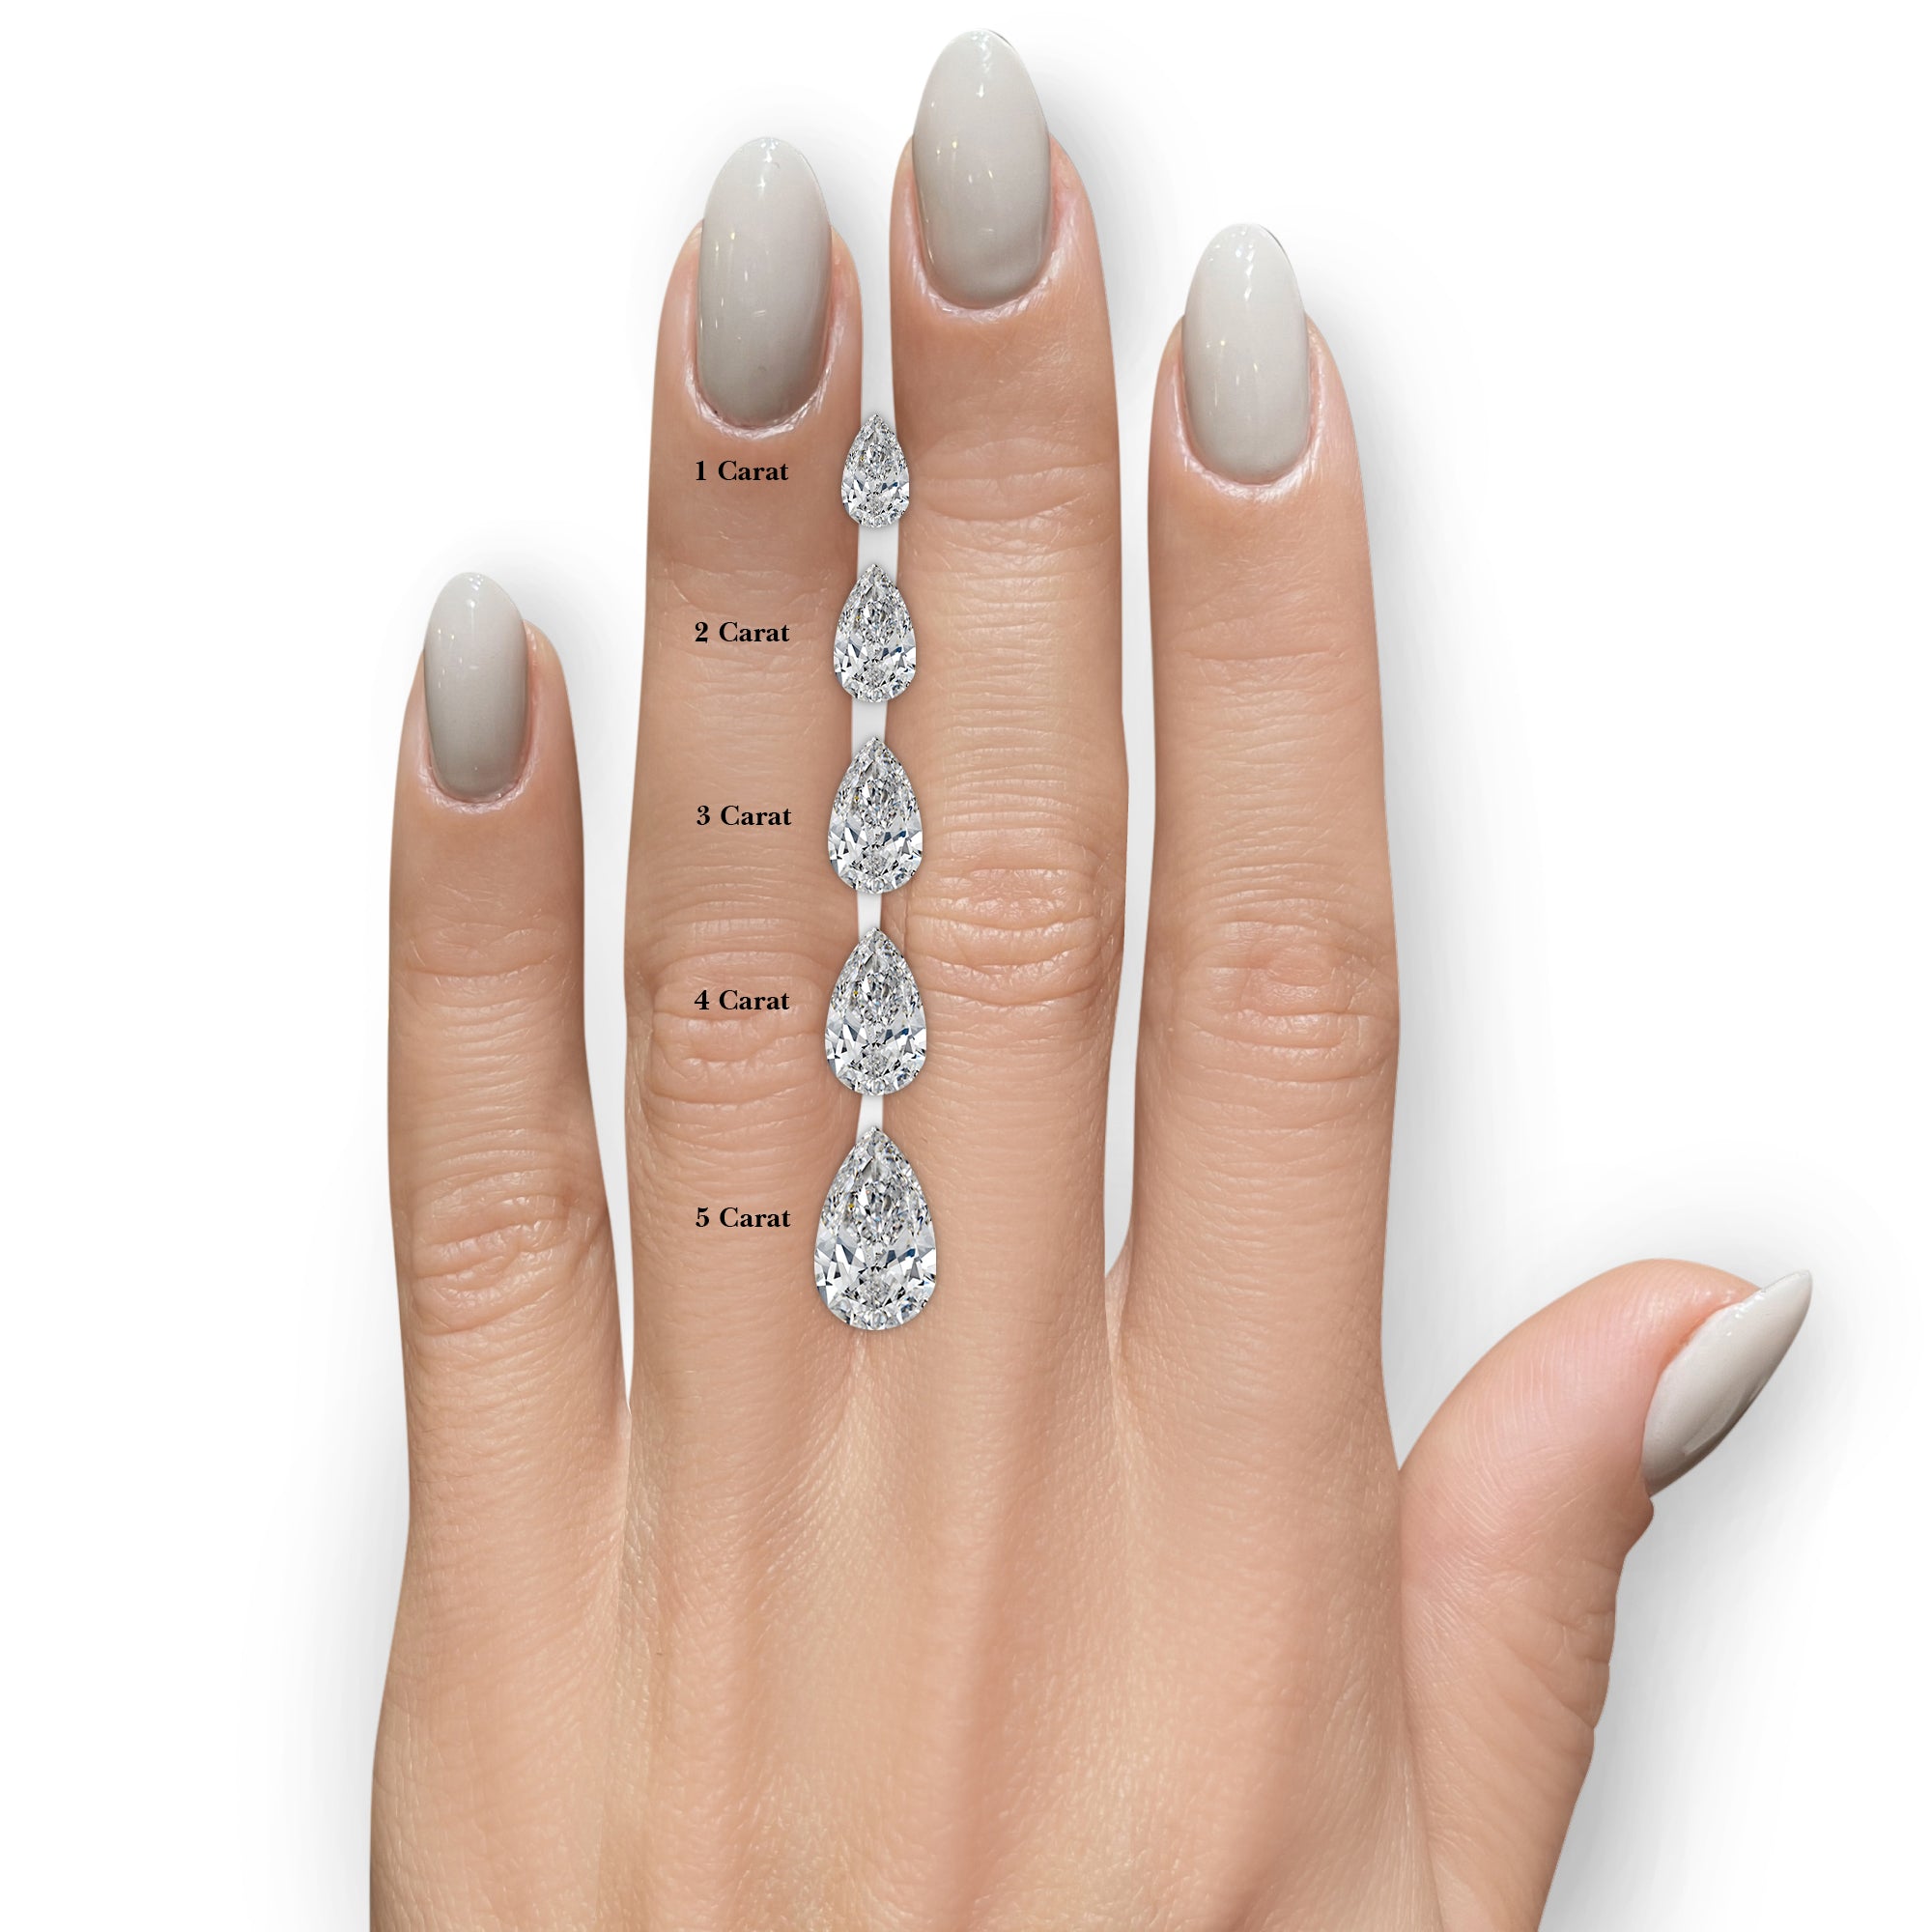 Keyshawna Lab Grown Diamond Ring -18K White Gold